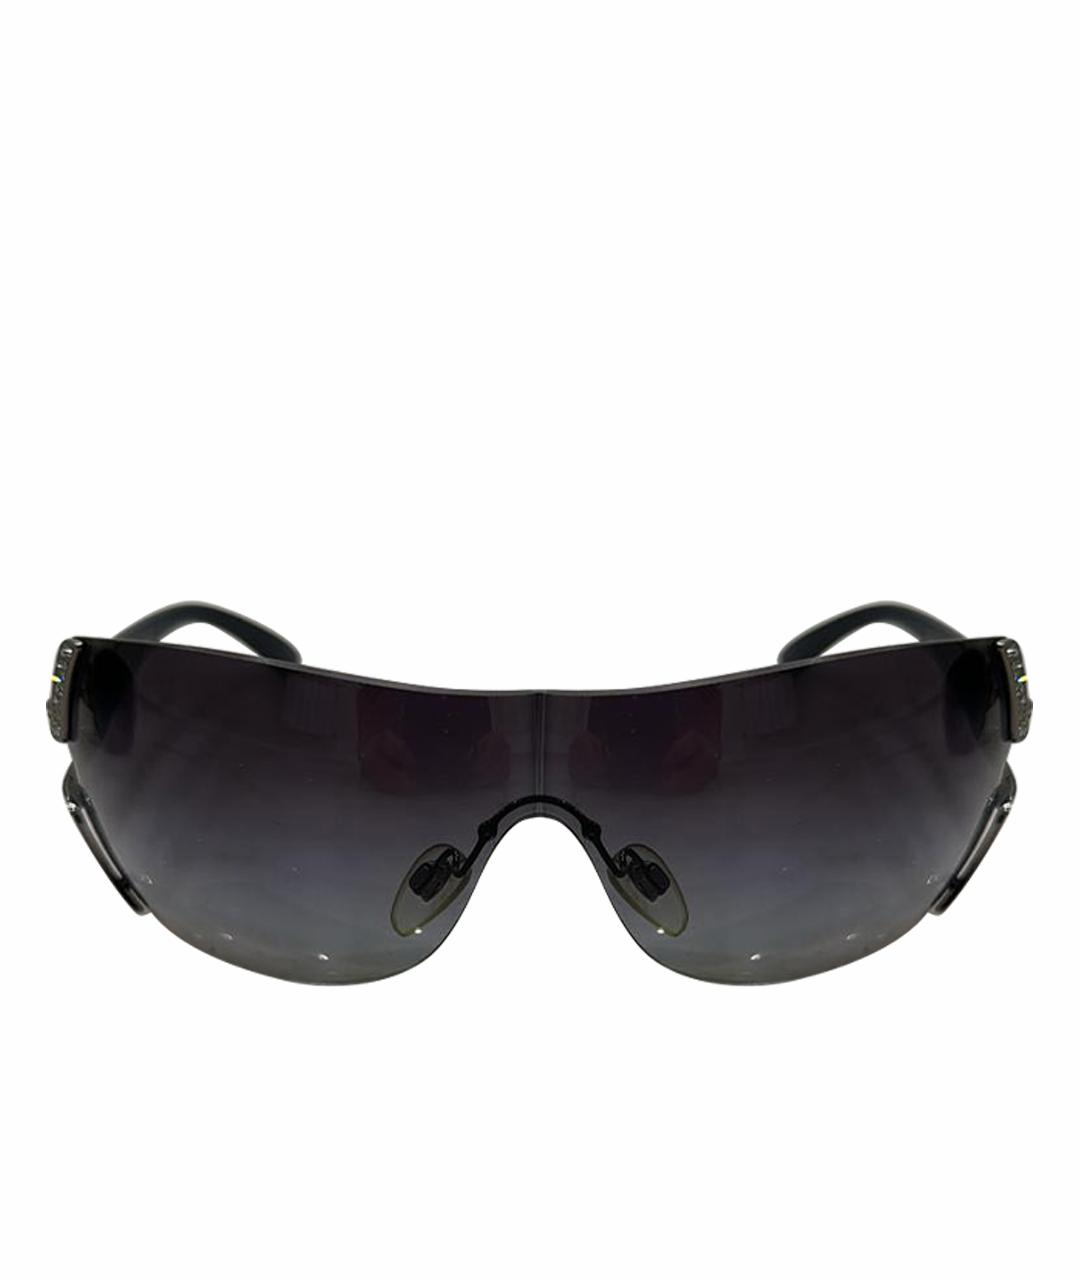 BVLGARI Антрацитовые пластиковые солнцезащитные очки, фото 1